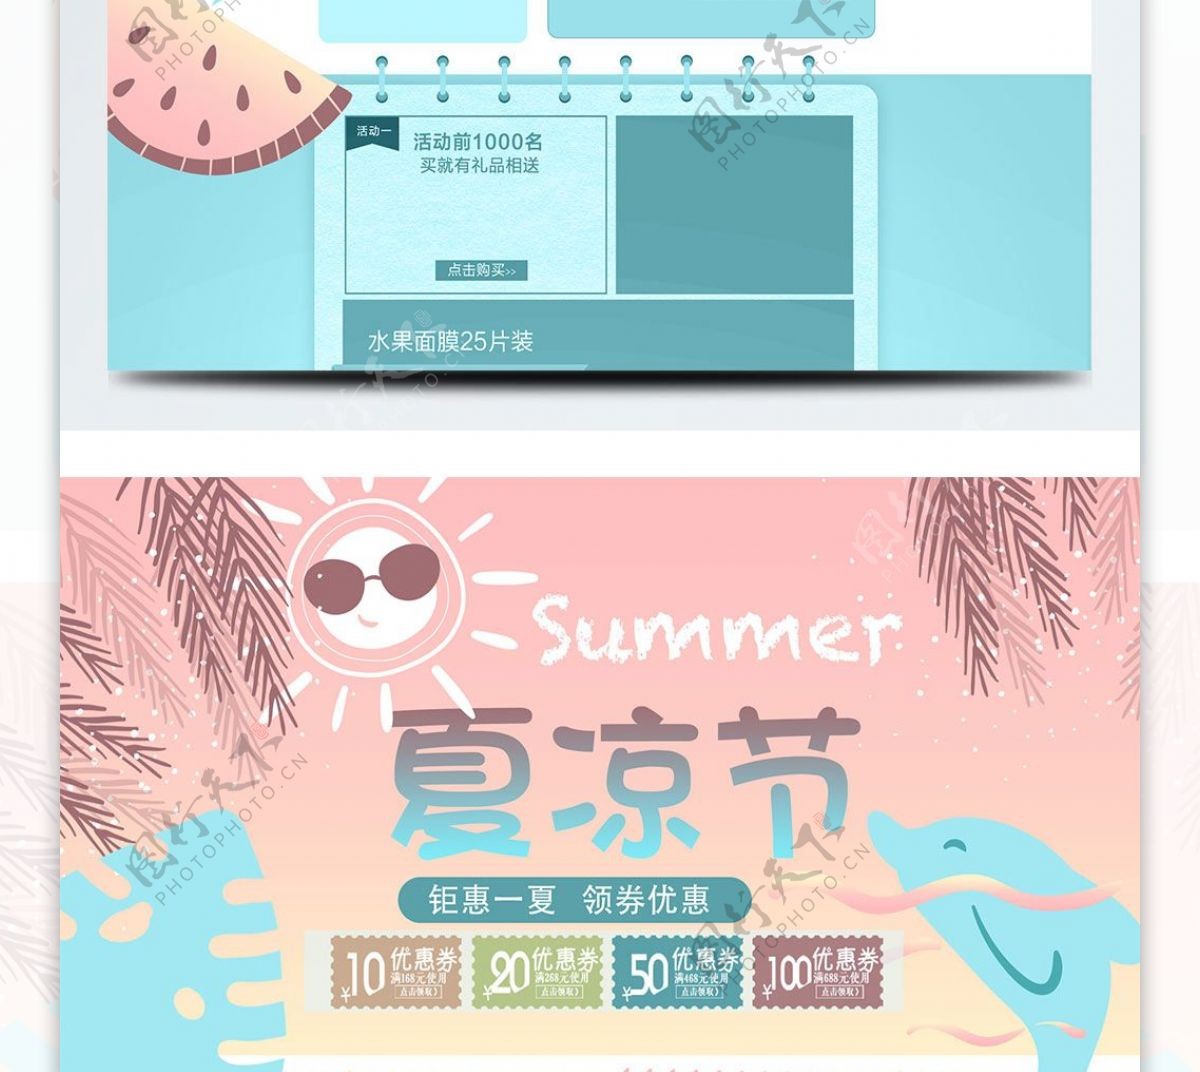 2018夏凉节促销天猫淘宝电商首页模板